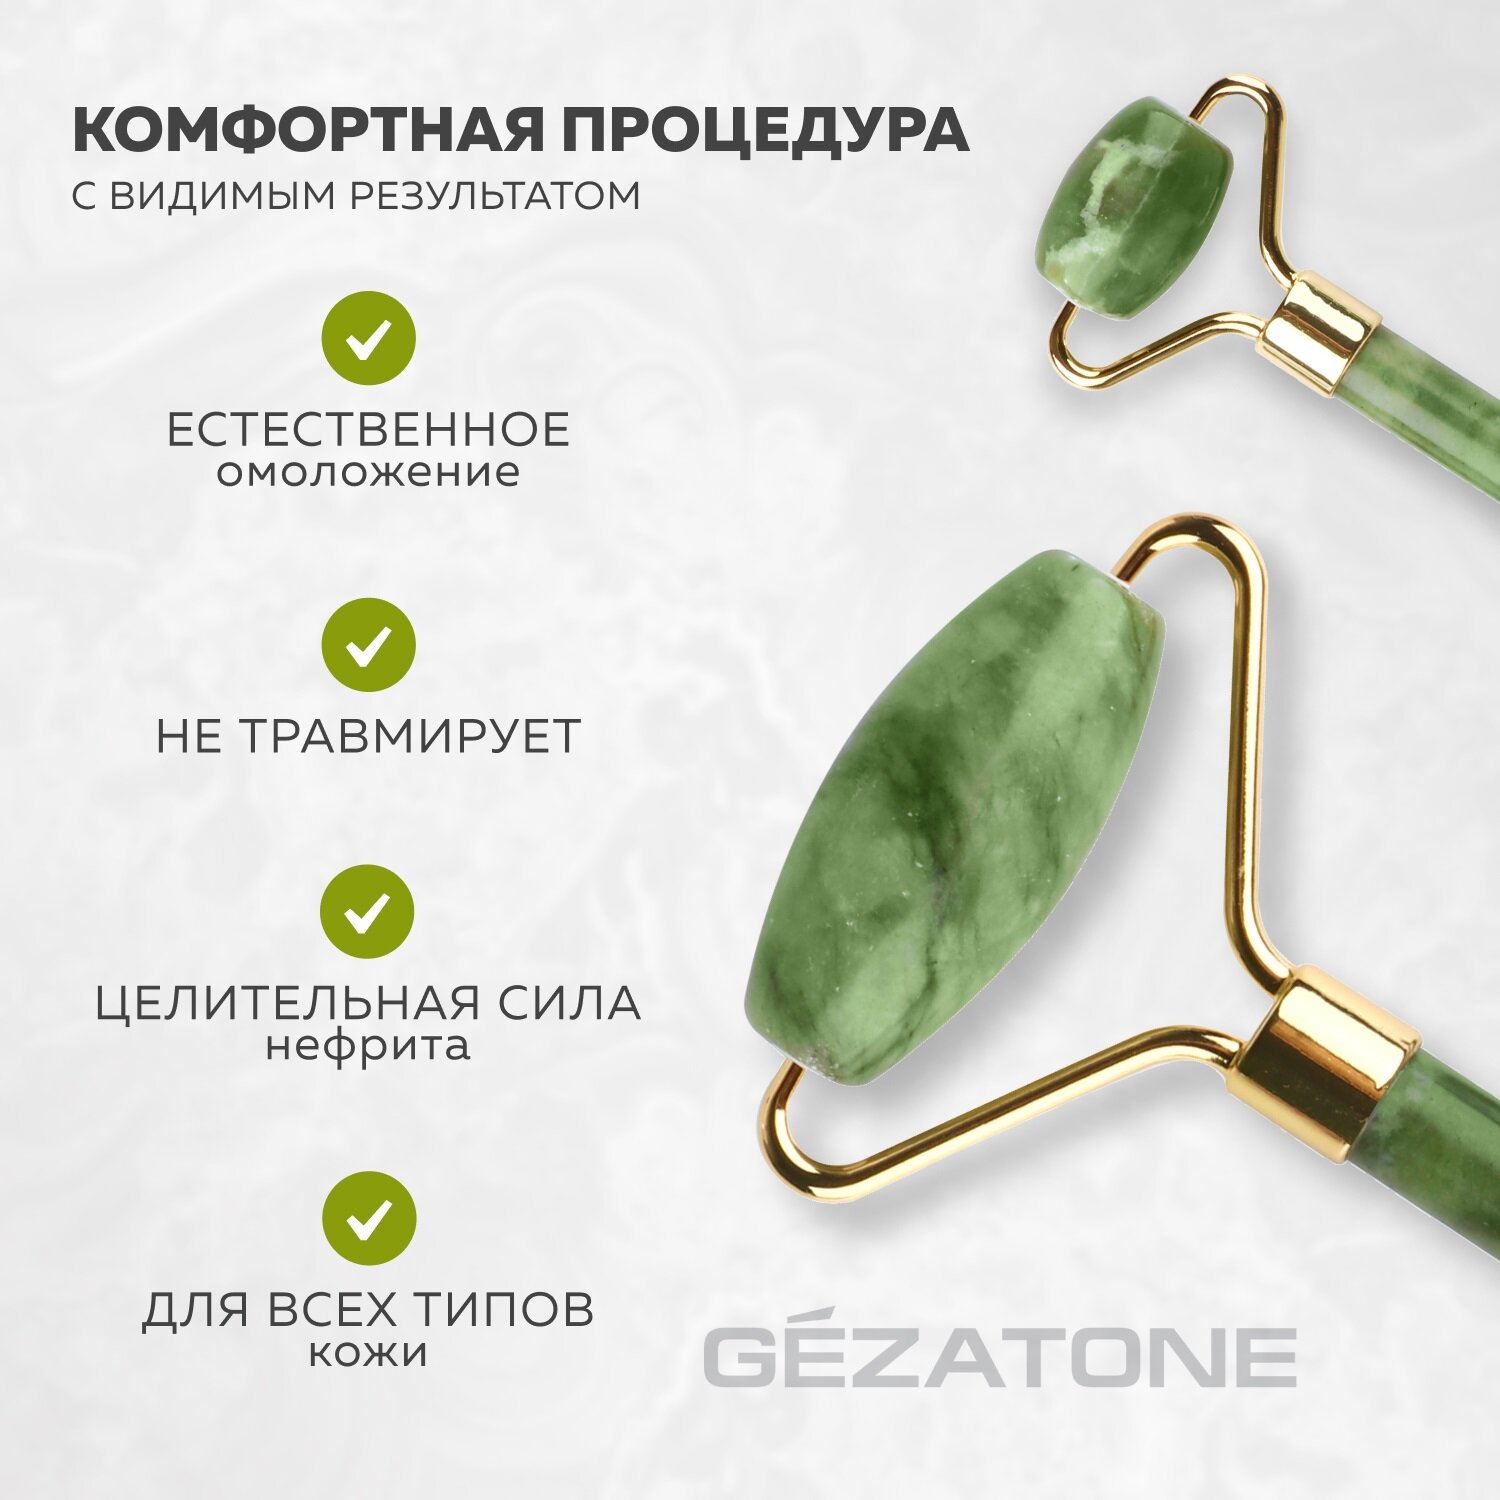 Роликовый массажер для лица двусторонний Gezatone из натурального нефрита (Green) - фото №5